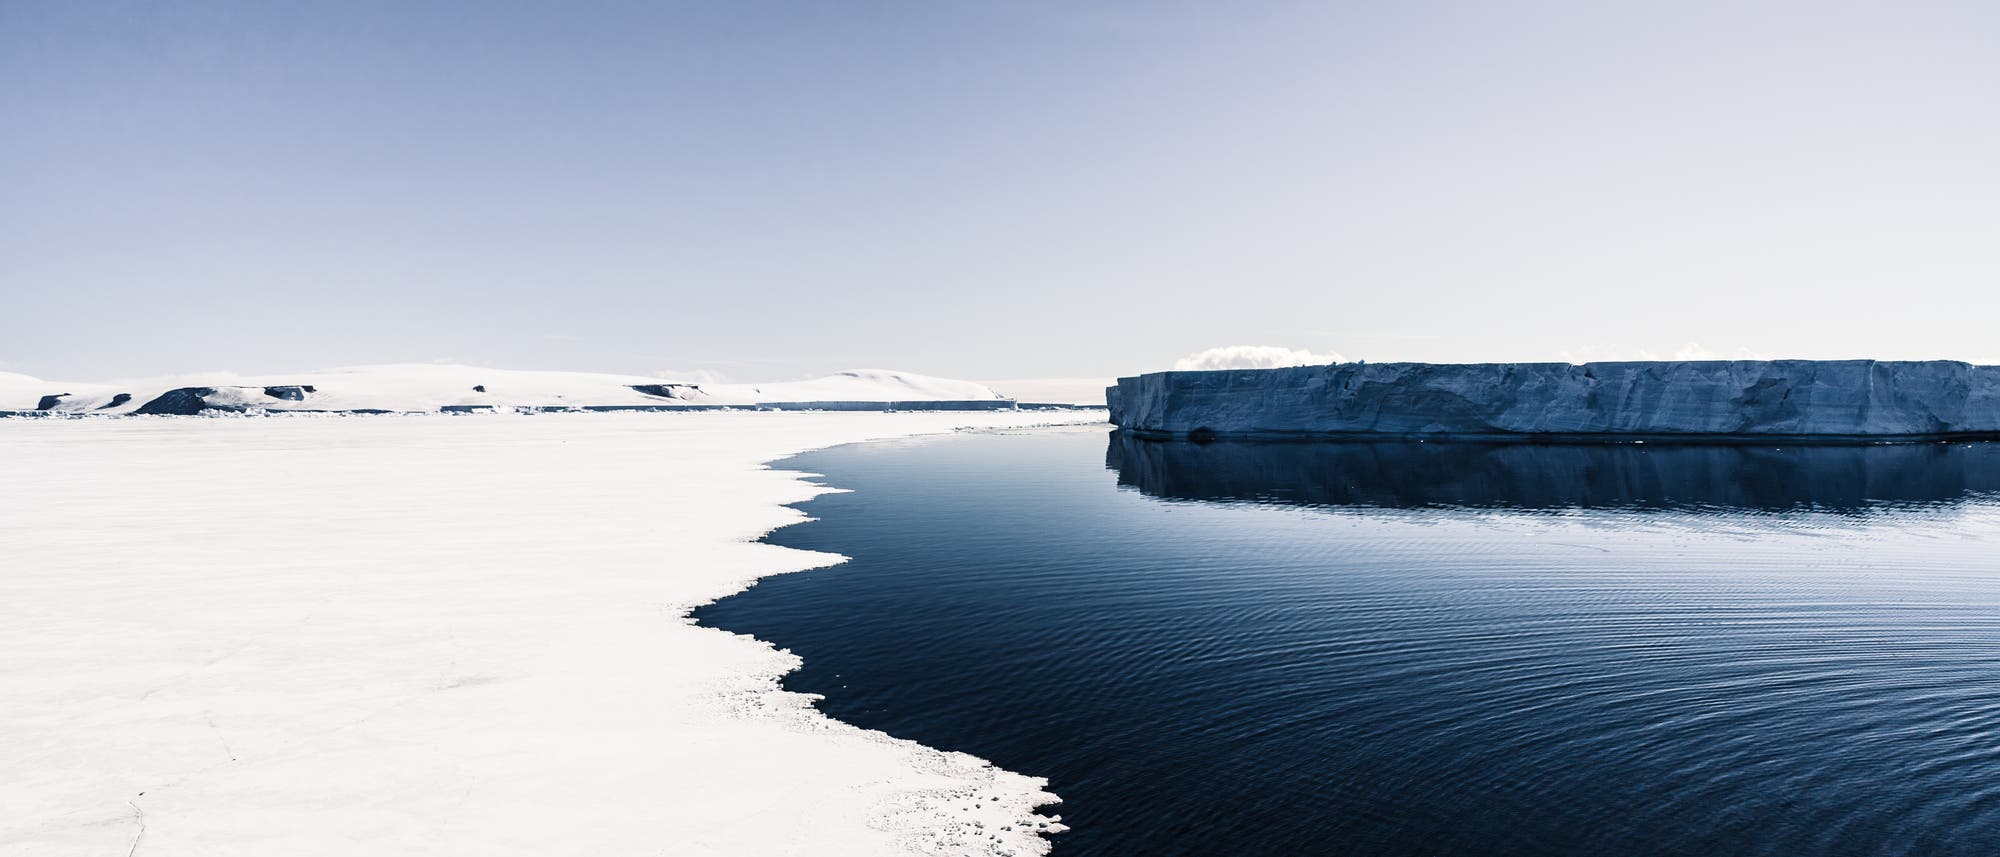 Offenes, dunkles Wasser erstreckt sich zwischen hellem, weißem Eis links im Bild und einem dunklen Eisberg rechts. Der Himmel ist blassblau.